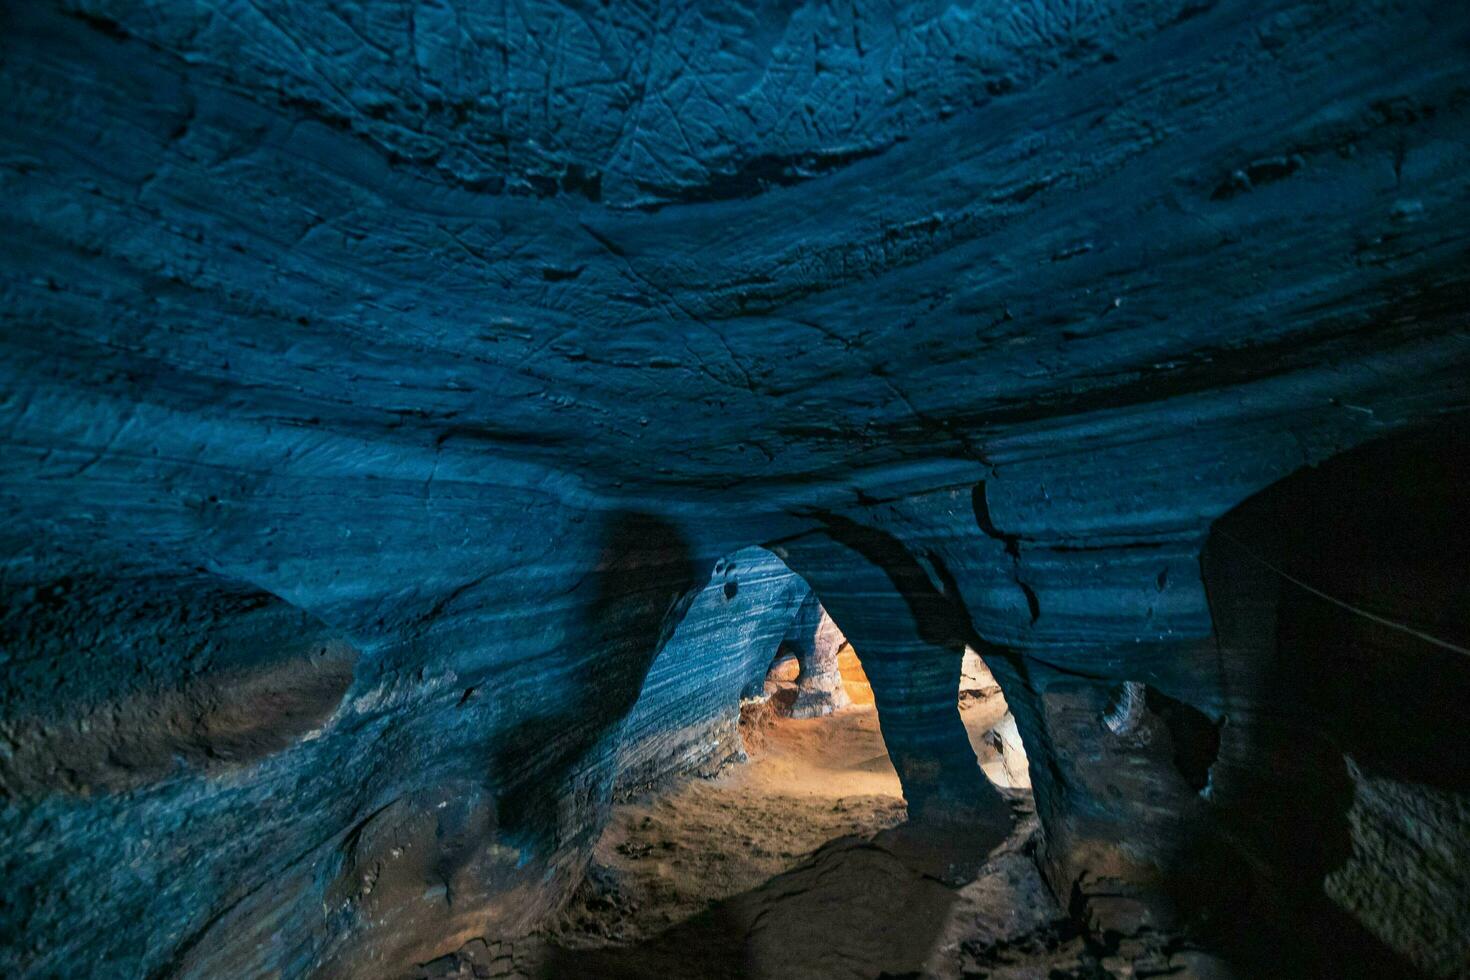 osynlig i thailand, de blå grotta funktioner en naturlig blå marmor Färg mönster på dess väggar. foto